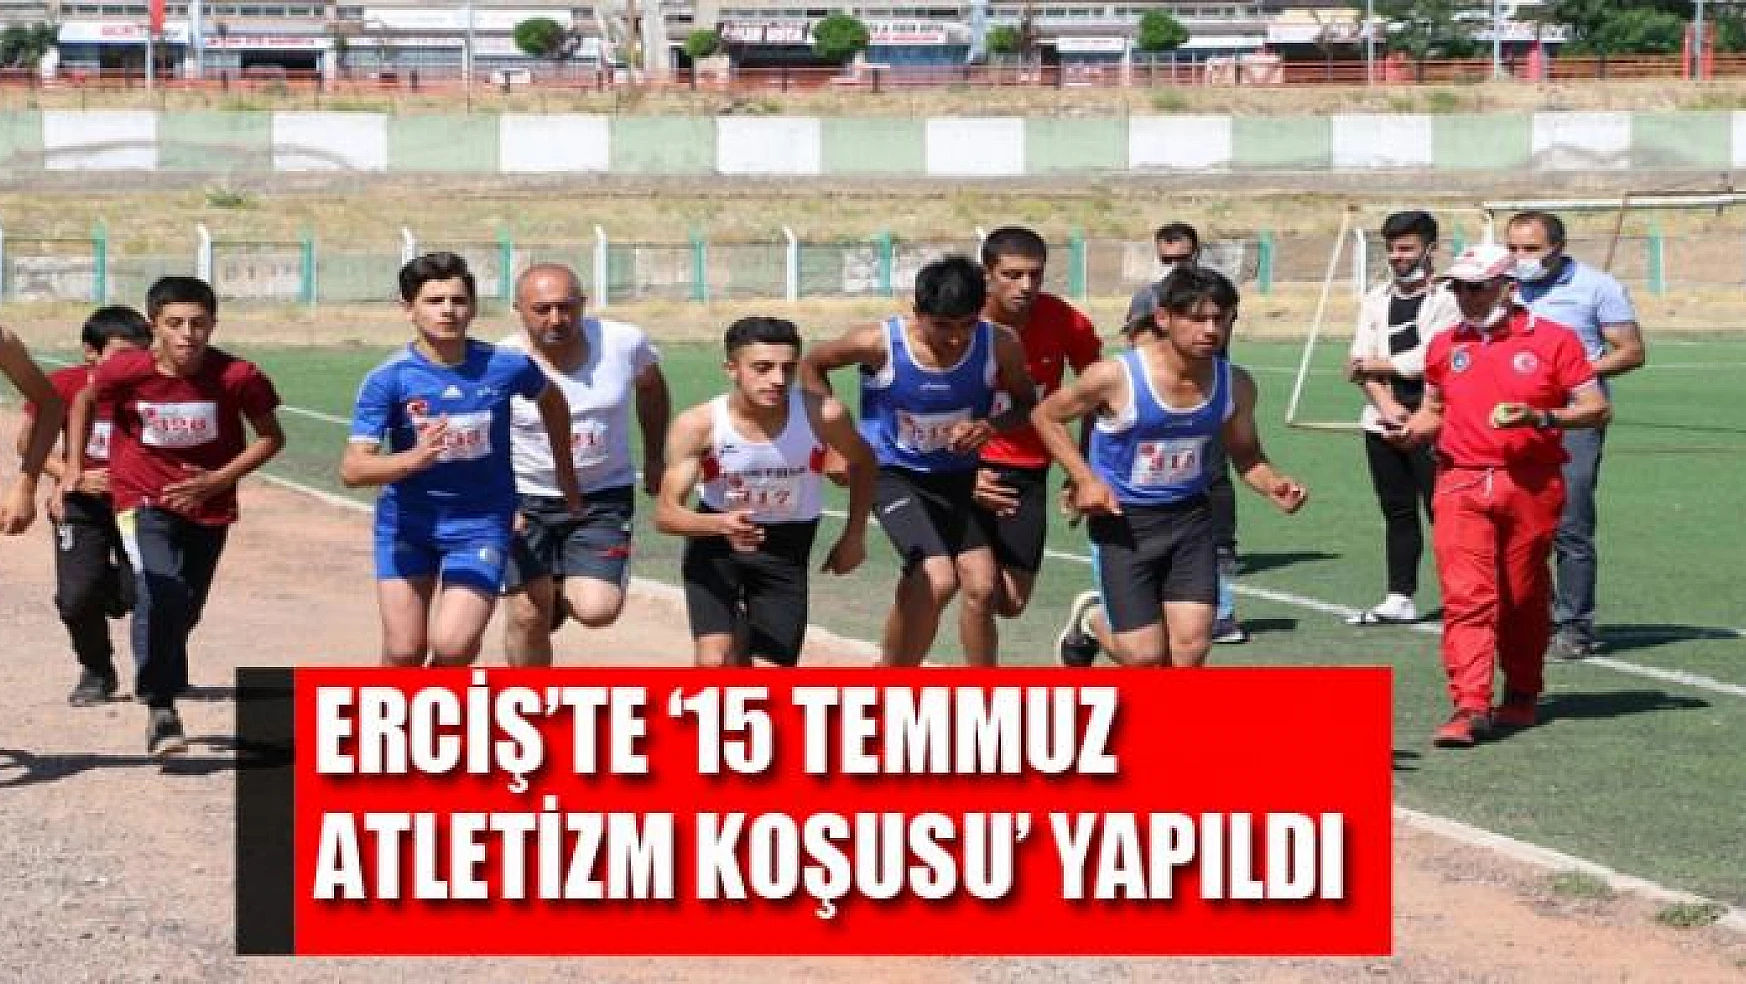 Erciş'te '15 Temmuz Atletizm Koşusu' yapıldı